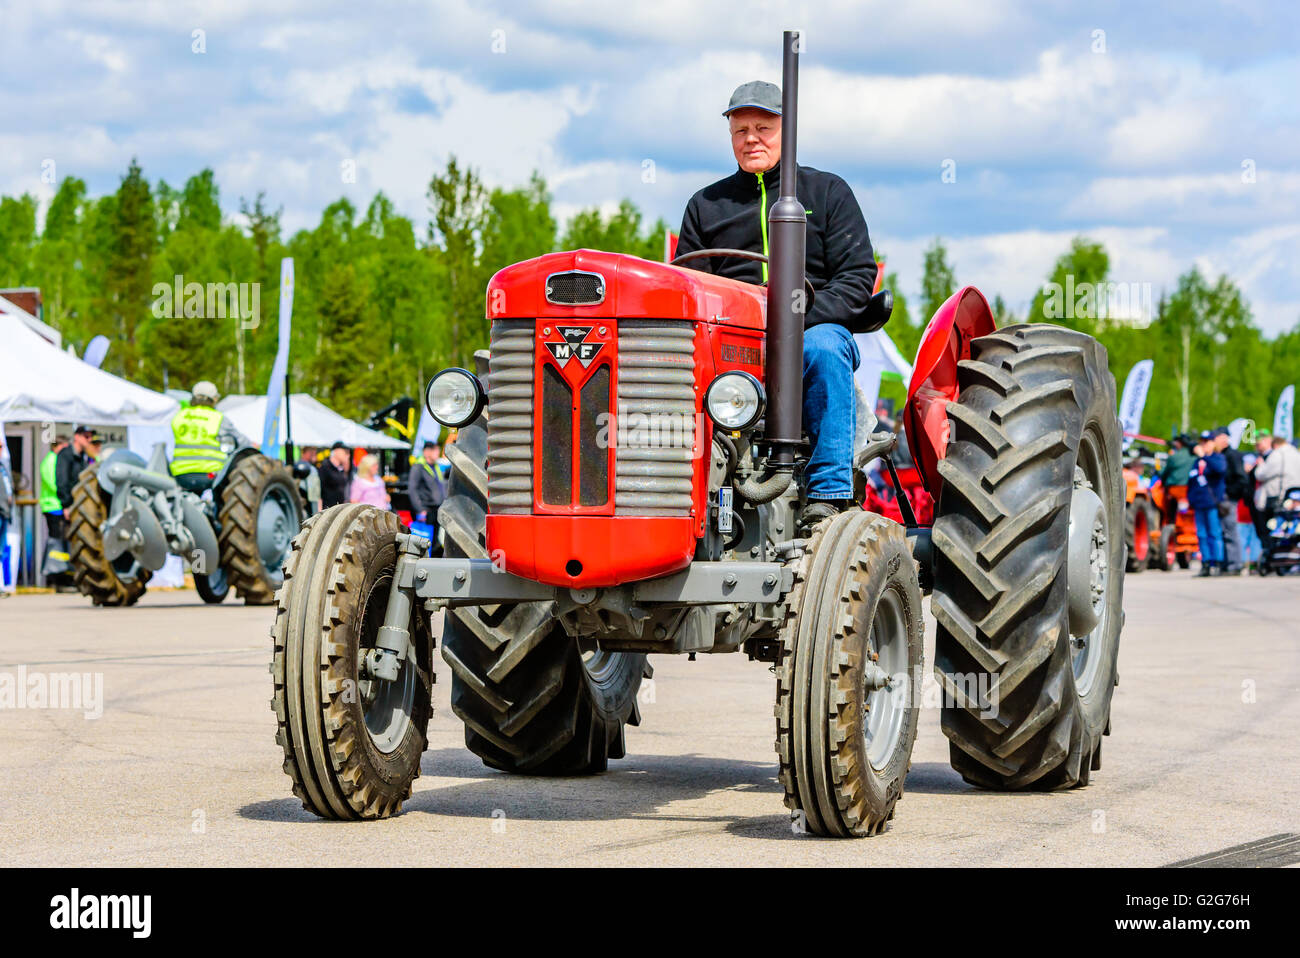 Emmaboda, Schweden - 14. Mai 2016: Wald und Traktor (Skog Och Traktor) fair. Klassische Oldtimer Traktoren auf der Parade. Hier ein rotes 1964 Stockfoto